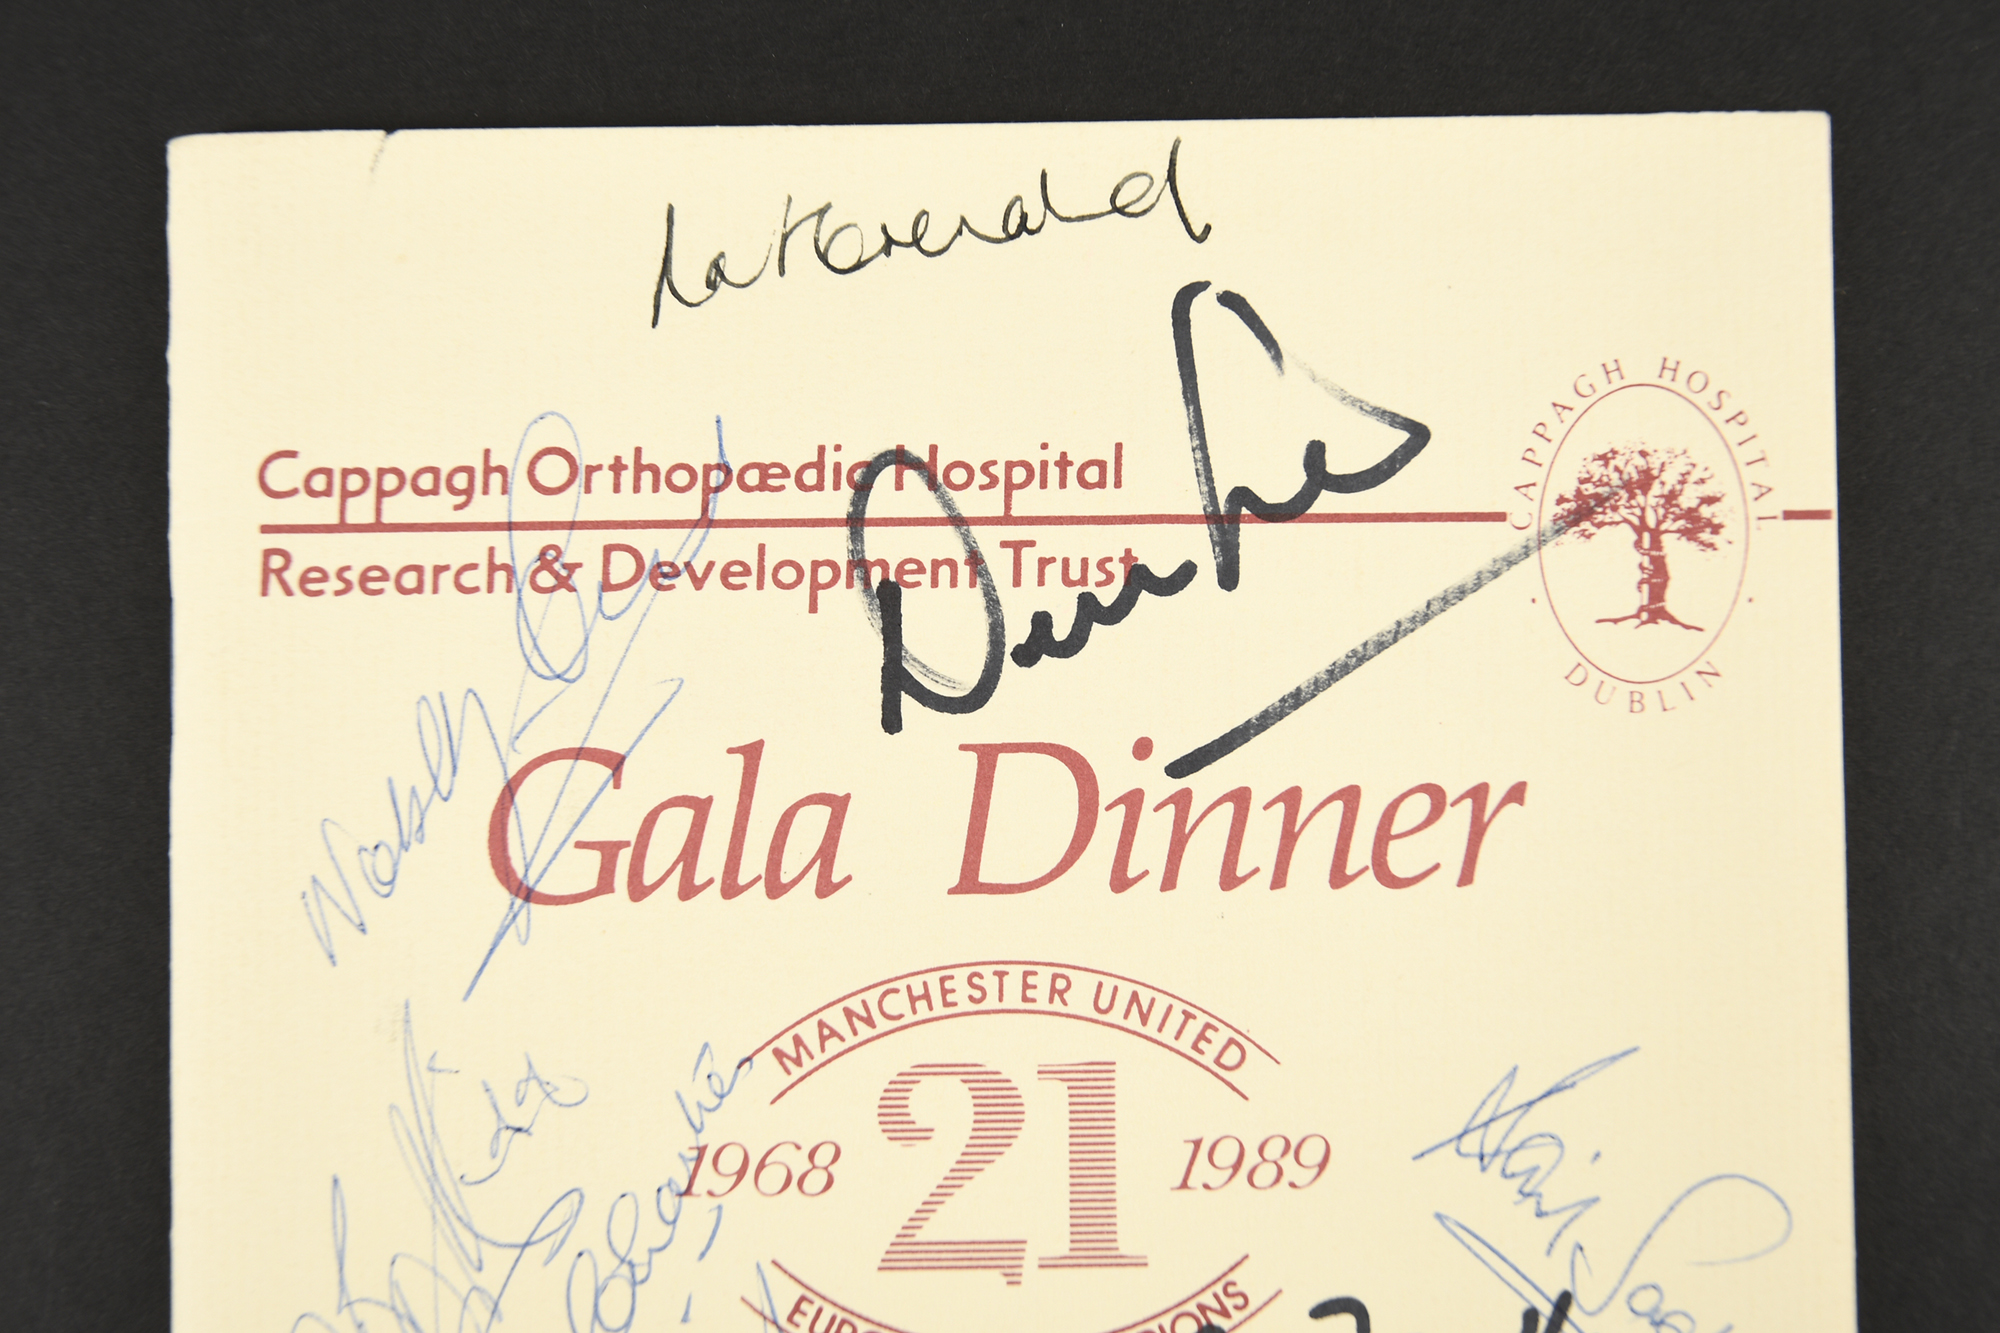 MANCHESTER UNITED Original signatures - Image 2 of 4